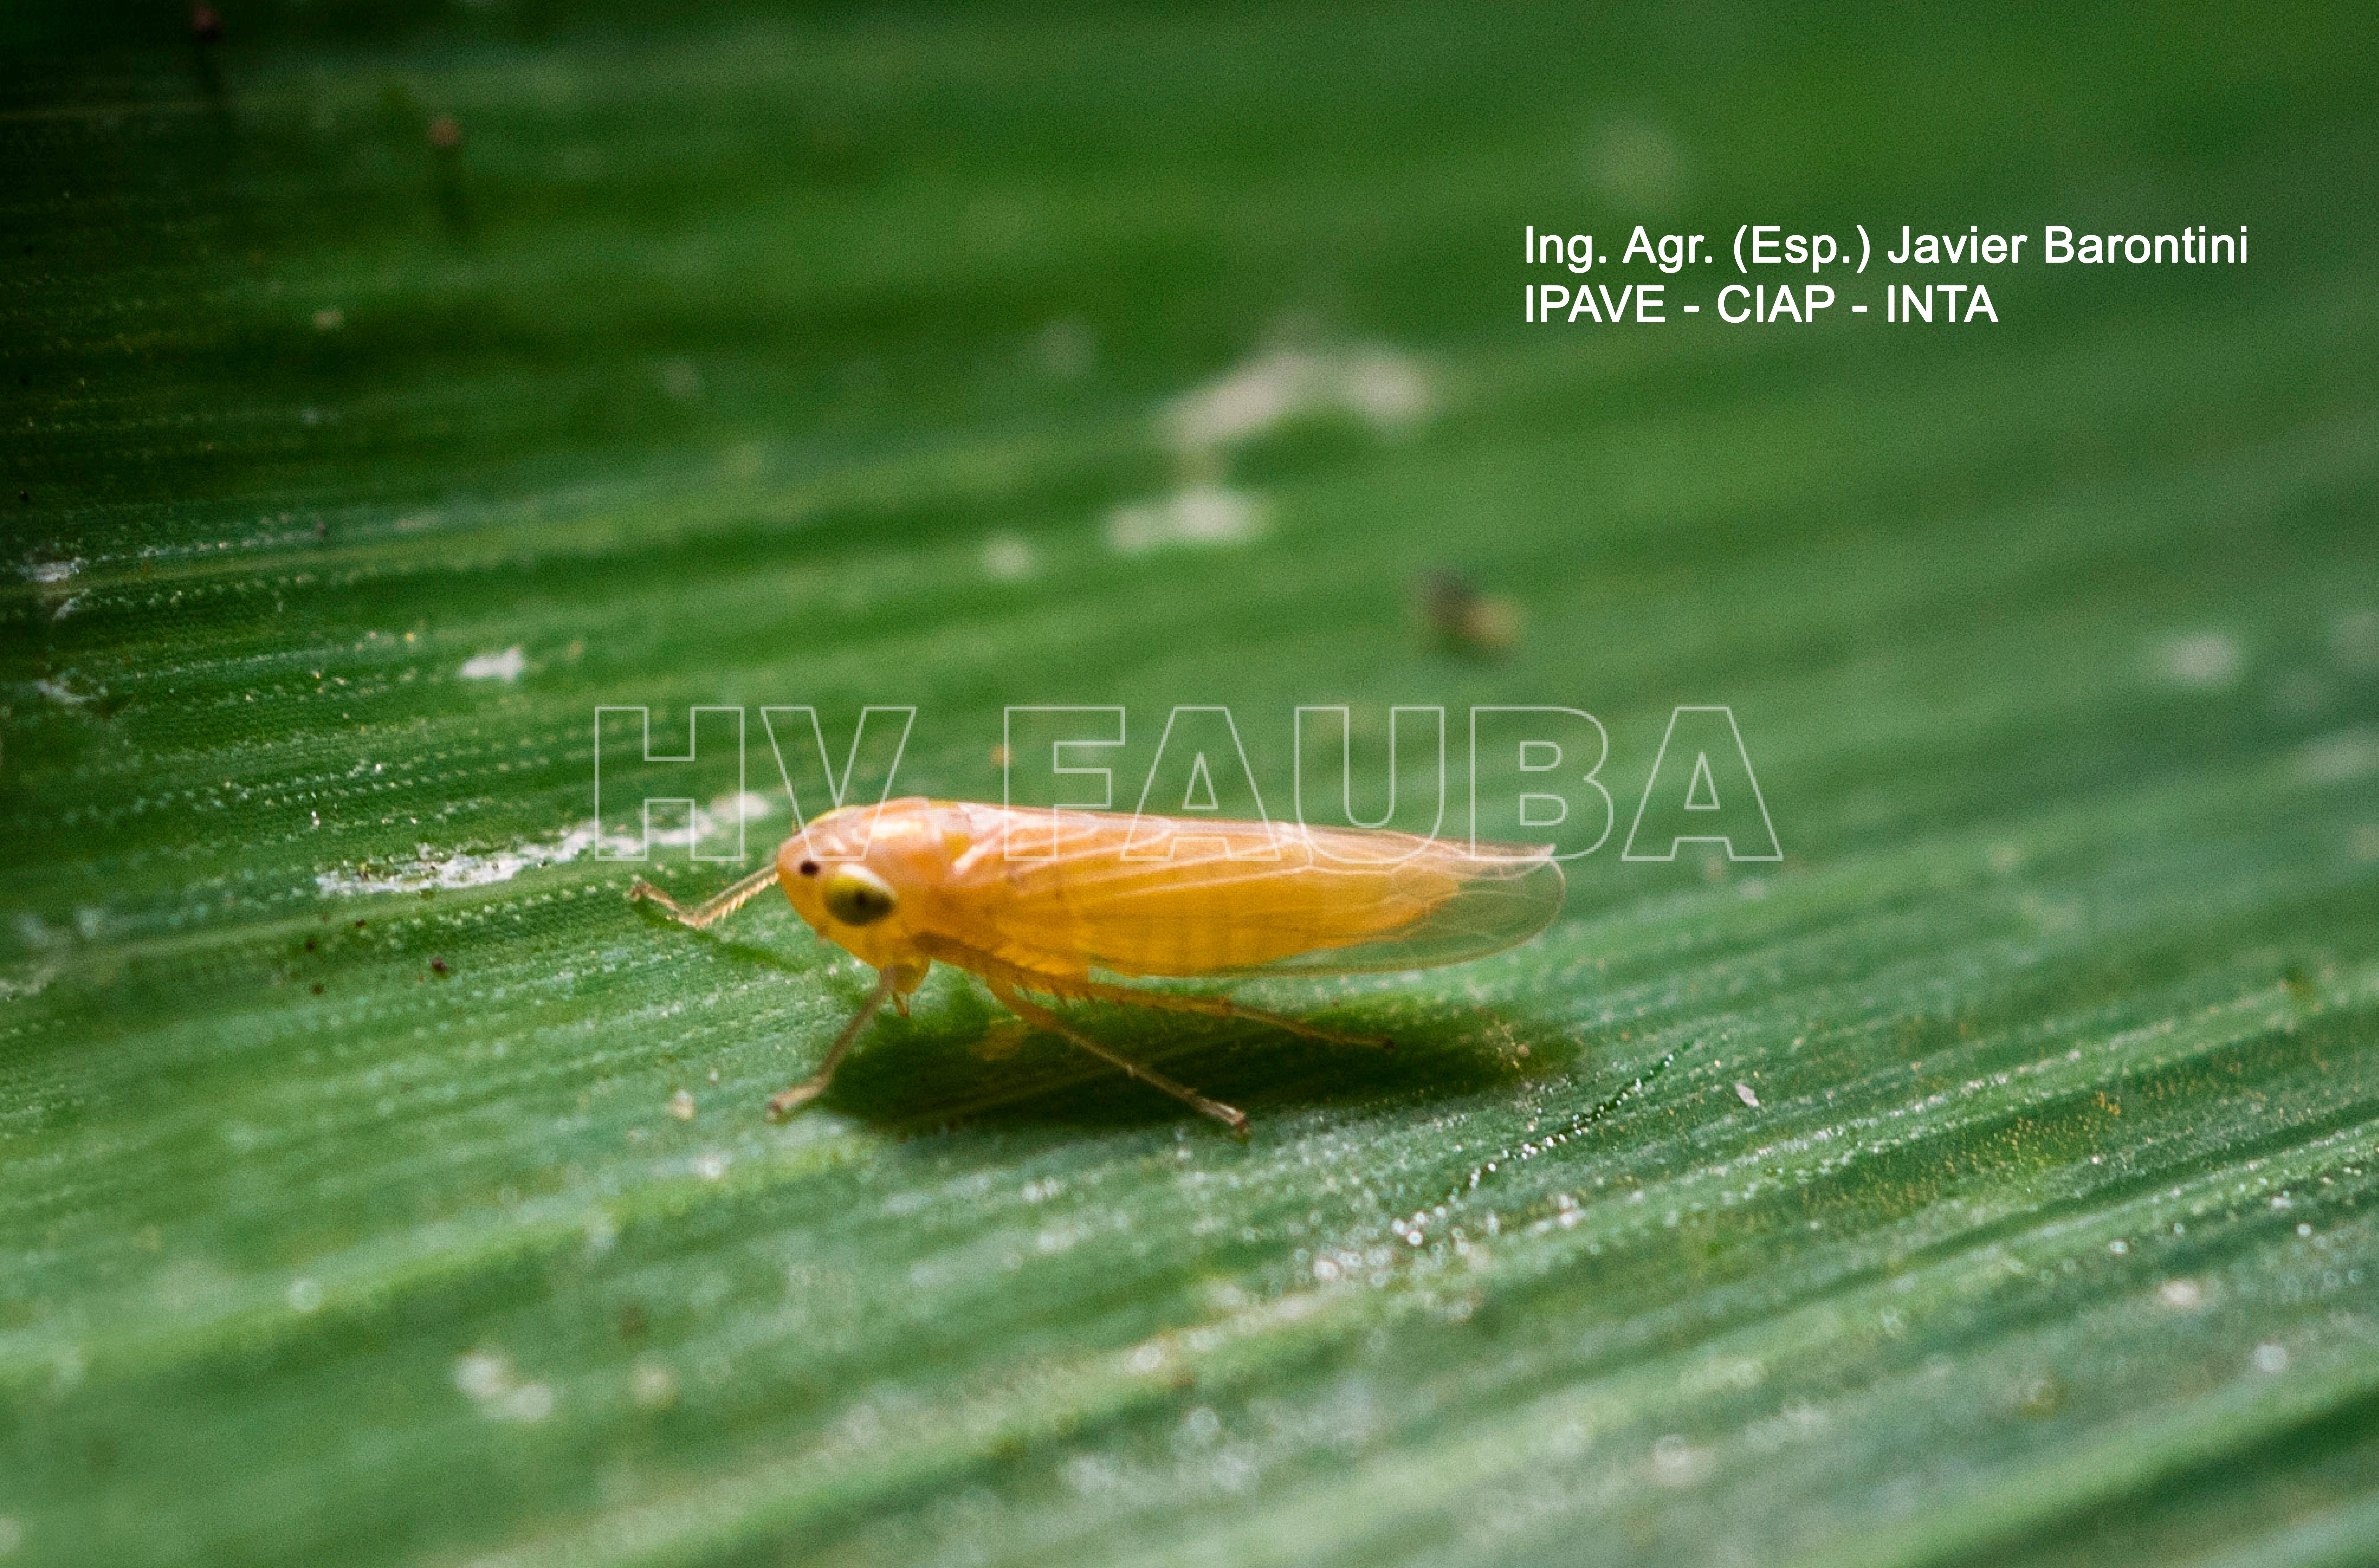 Dalbulus maidis, Insecto vector del Achaparramiento del maíz. Autor: Ing. Agr. (Esp.) Javier Barontini, IPAVE-CIAP-INTA.